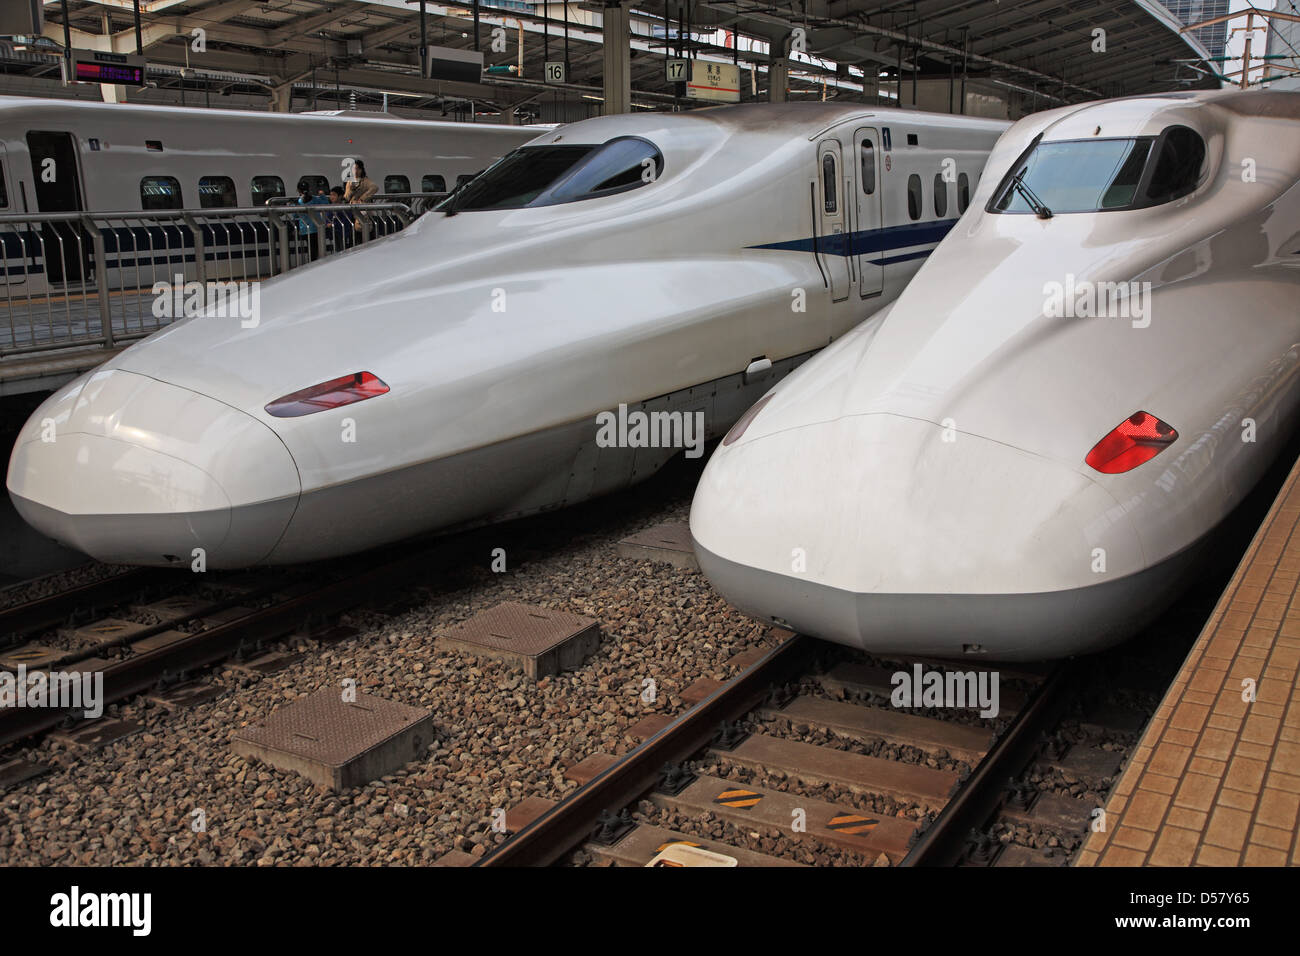 Japan, Tokyo, Shinkansen bullet train on tracks Stock Photo